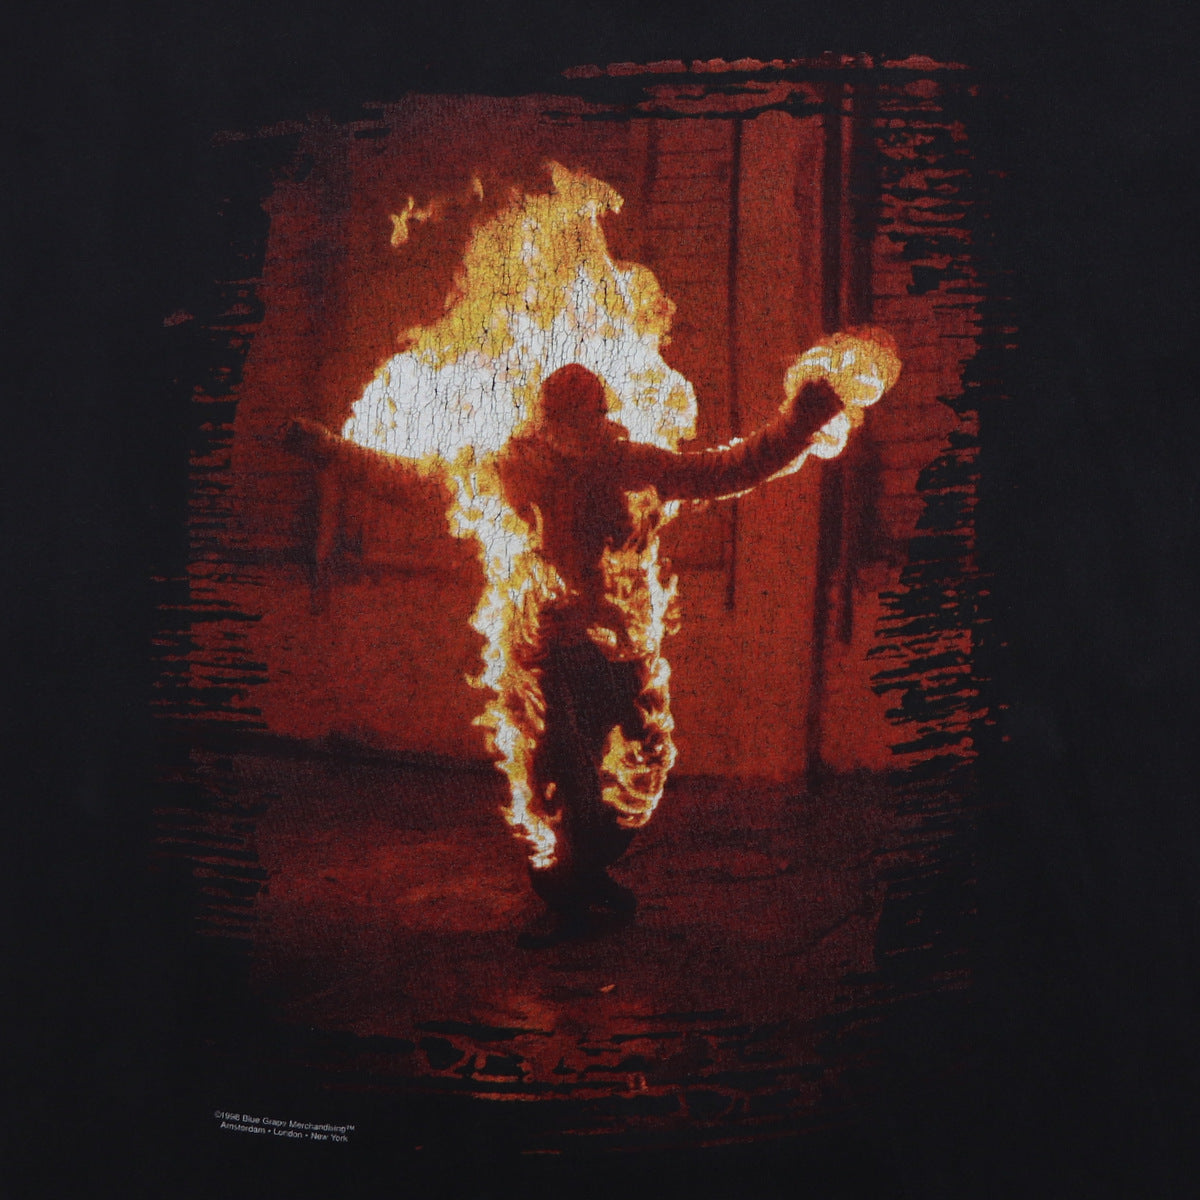 スーパーレア　1998 Rammstein Burning Man TシャツXL